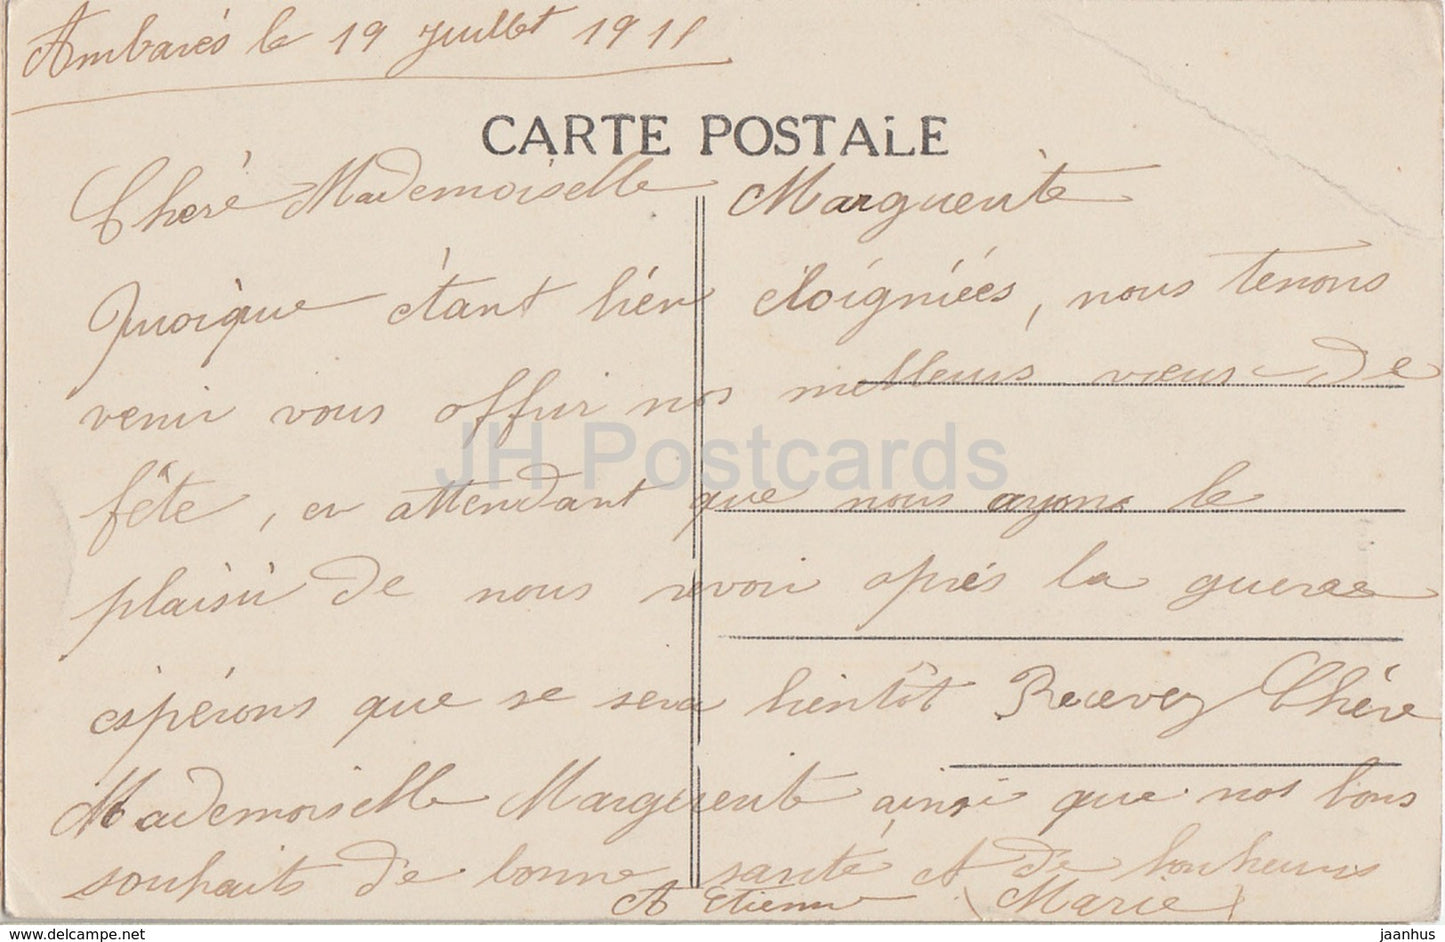 Ambares - L'Eglise - Kirche - 23 - alte Postkarte - 1911 - Frankreich - gebraucht